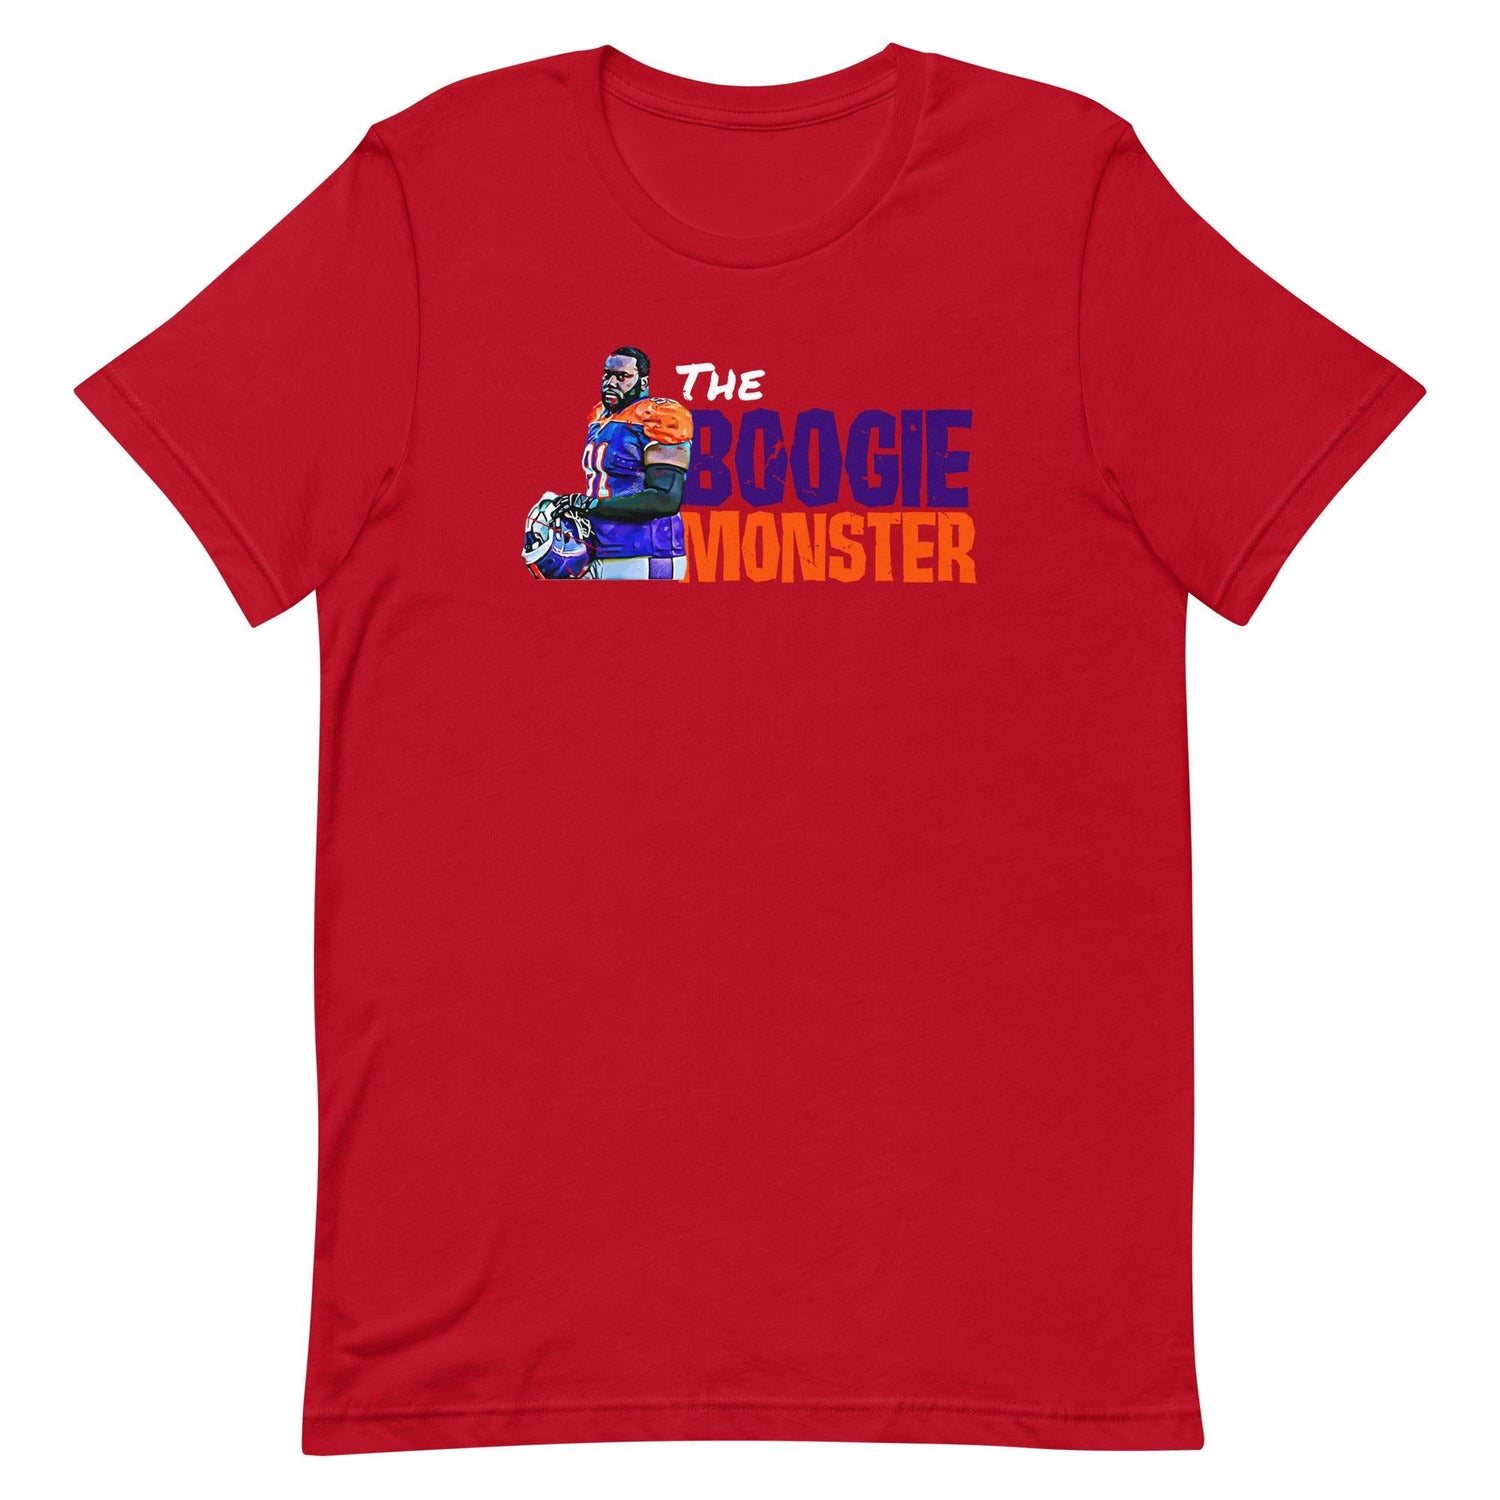 Boogie Roberts "Boogie Monster" t-shirt - Fan Arch